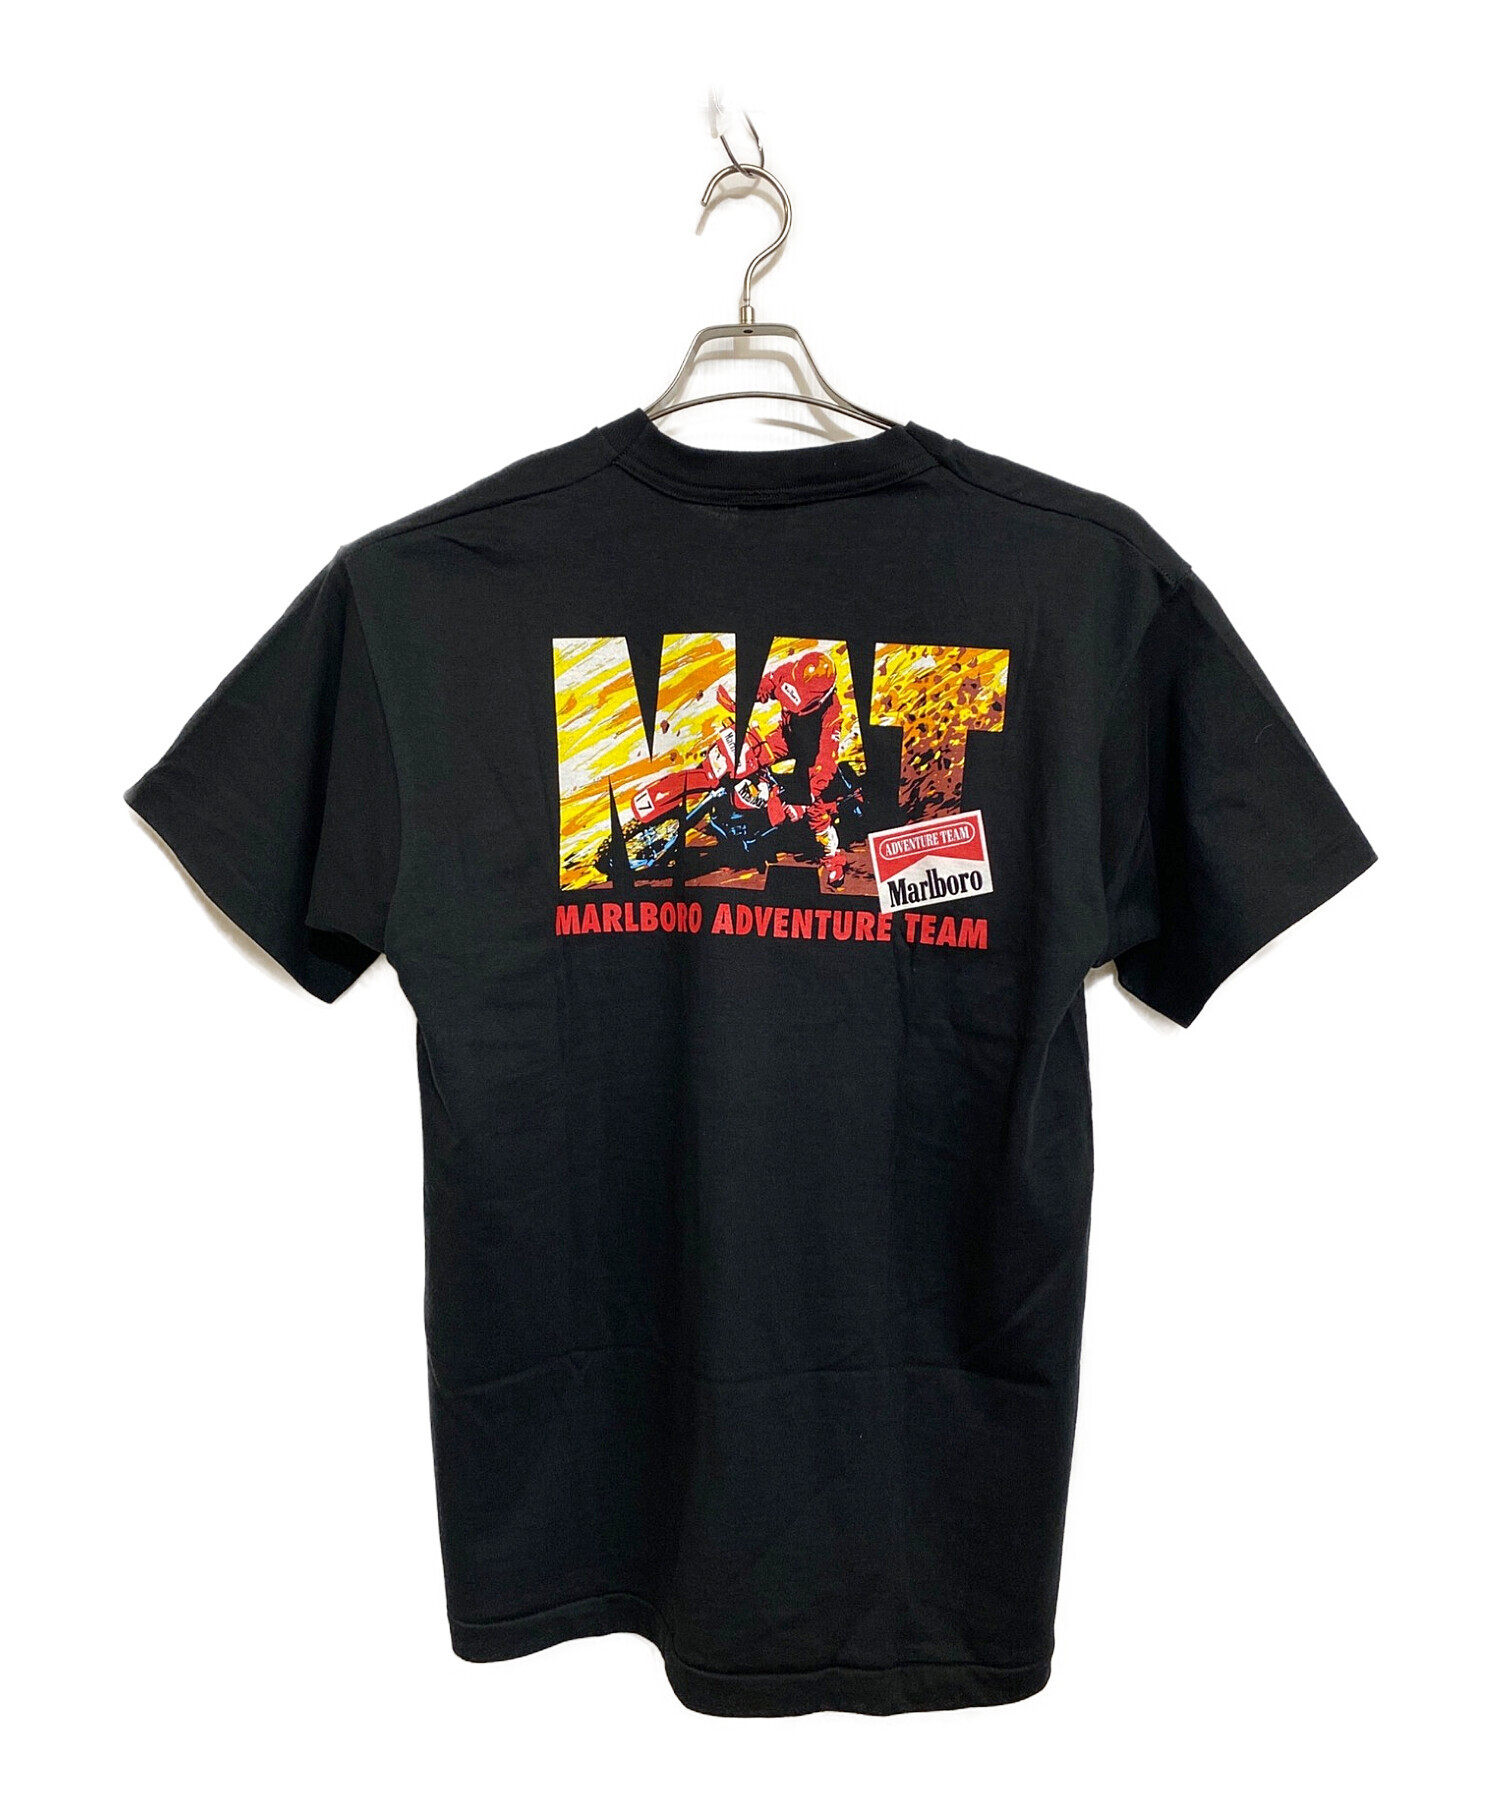 marlboro (マルボロ) 90's アドバタイジングTシャツ ブラック サイズ:SIZE FREE